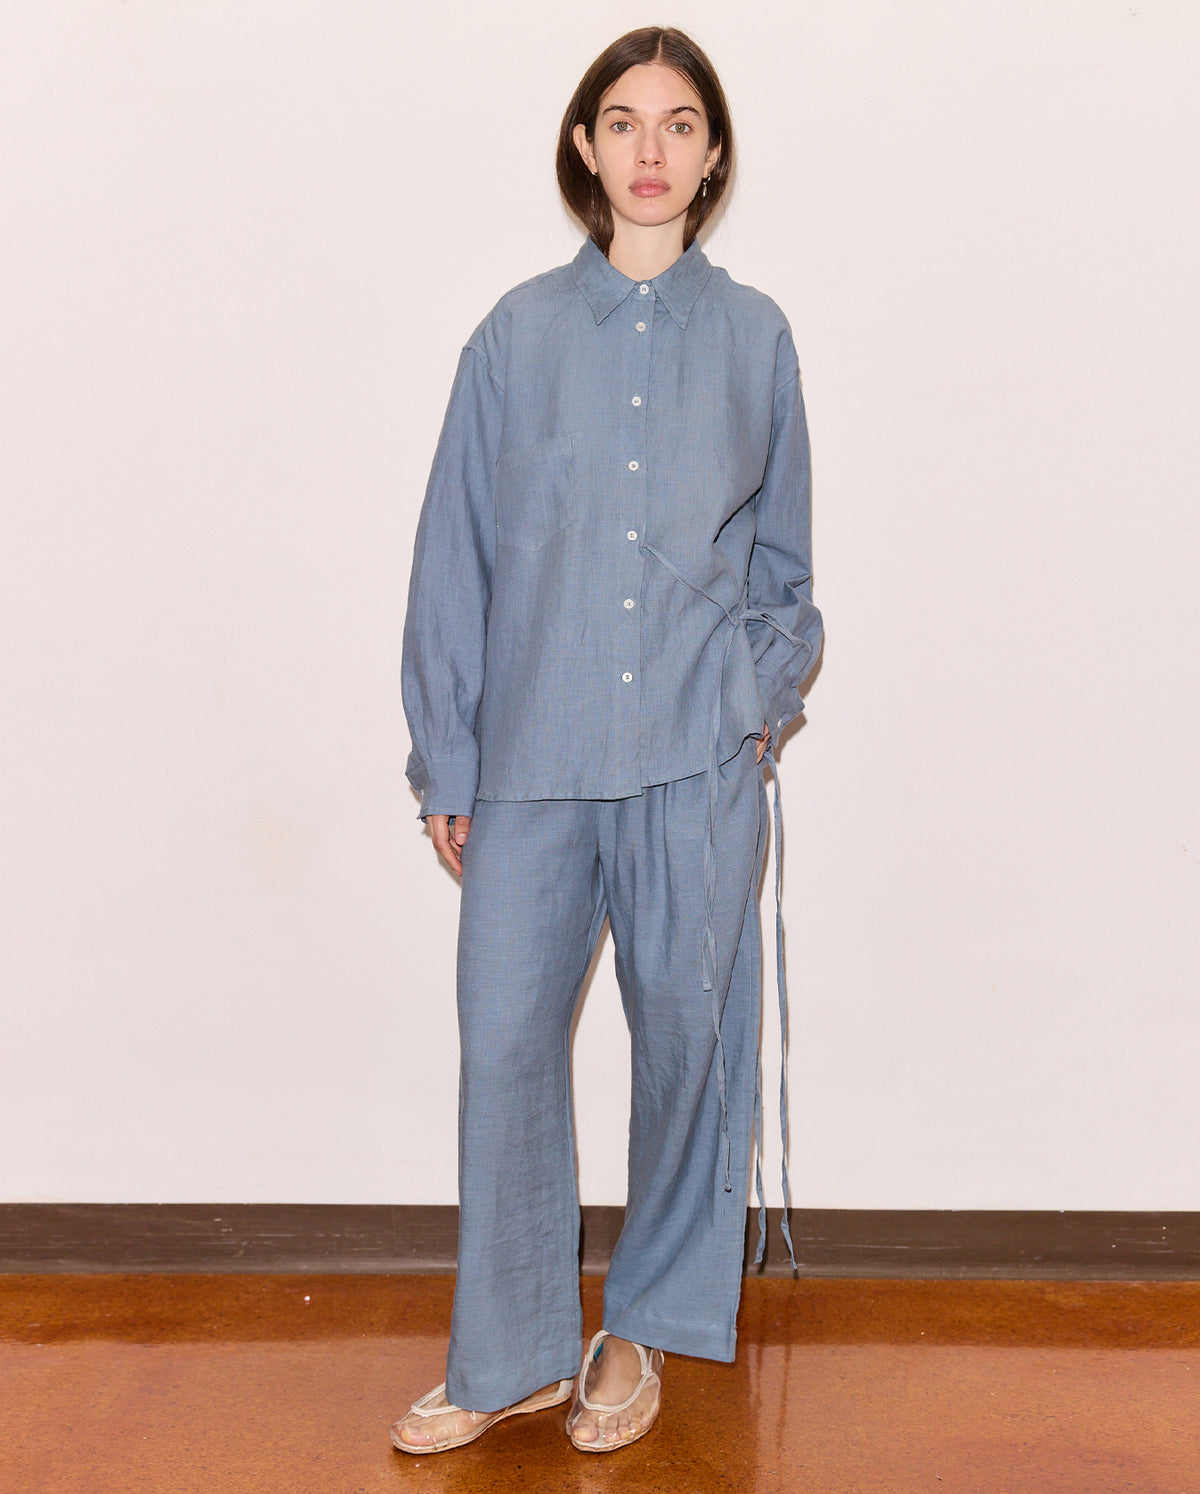 deiji studios matching set pajamas for women blue